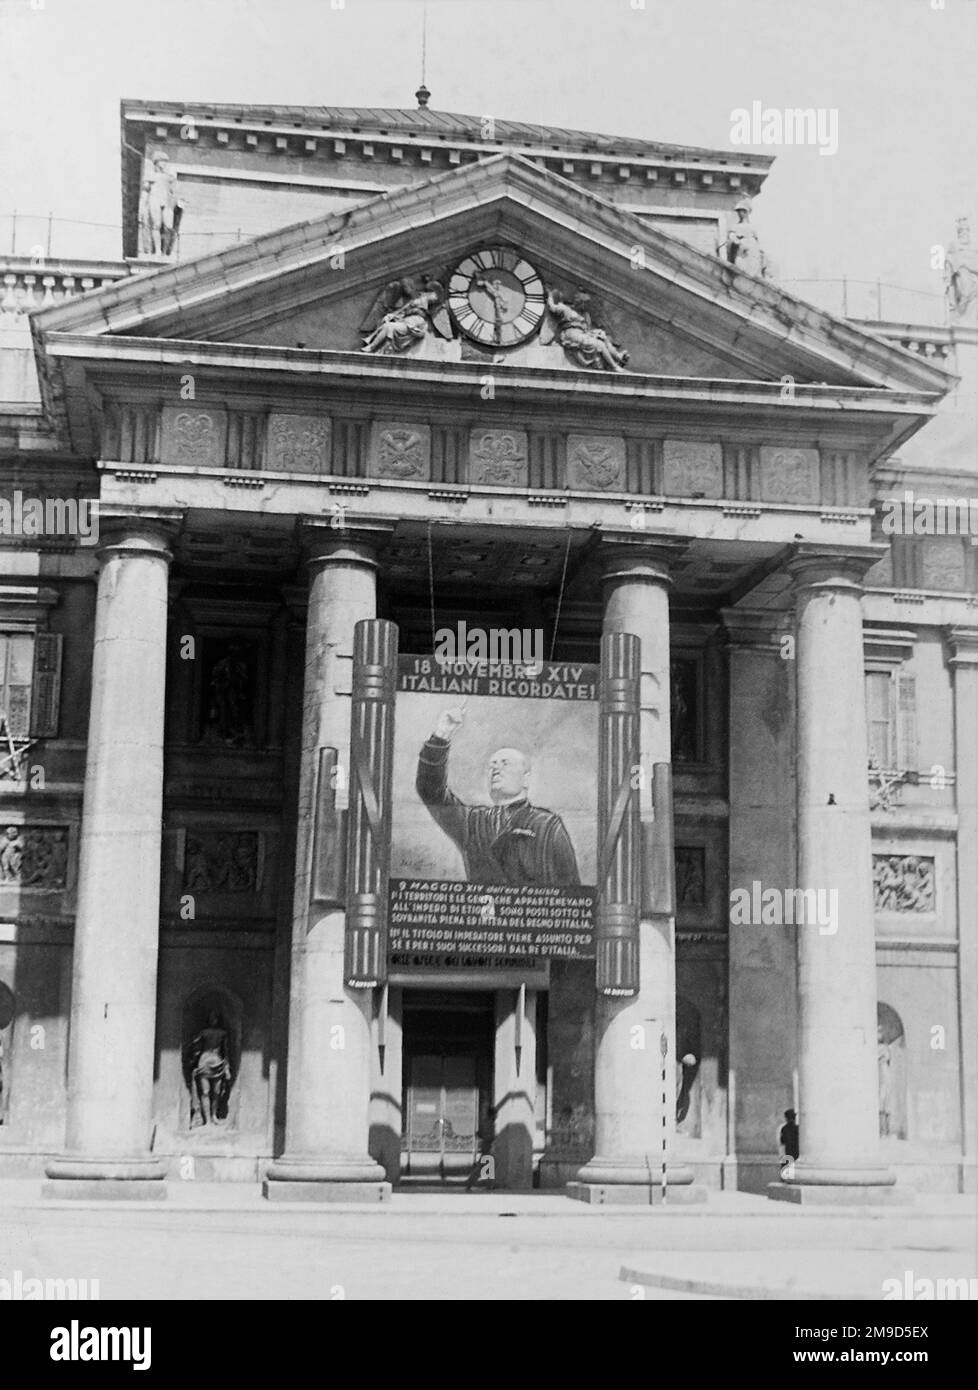 1936 , 27 maggio , TRIESTE , ITALIA : PROPAGANDA fascista italiana , il GIGANTESCO ritratto DIPINTO BENITO MUSSOLINI ingrandimento di fronte alla porta d'ingresso della Borsa MERCI . L'immagine ha celebrato il discorso di Mussolini alla folla che ha proclamato la conquista italiana dell'Etiopia e la proclamazione DELL'IMPERO D'ITALIA il giorno 9 maggio 1936 a Roma . Fotografo sconosciuto . - STORIA - FOTO STORICHE - ROMA - FASCISMO - FASCISTA - FASCISMO - ITALIA - 30'S - '30 - ANNI TRENTA - NOVECENTO - PROPAGANDA - GATTO GUSTO - KITSCH - FASCIO LITTORIO - ARCHITETTURA - ARC Foto Stock